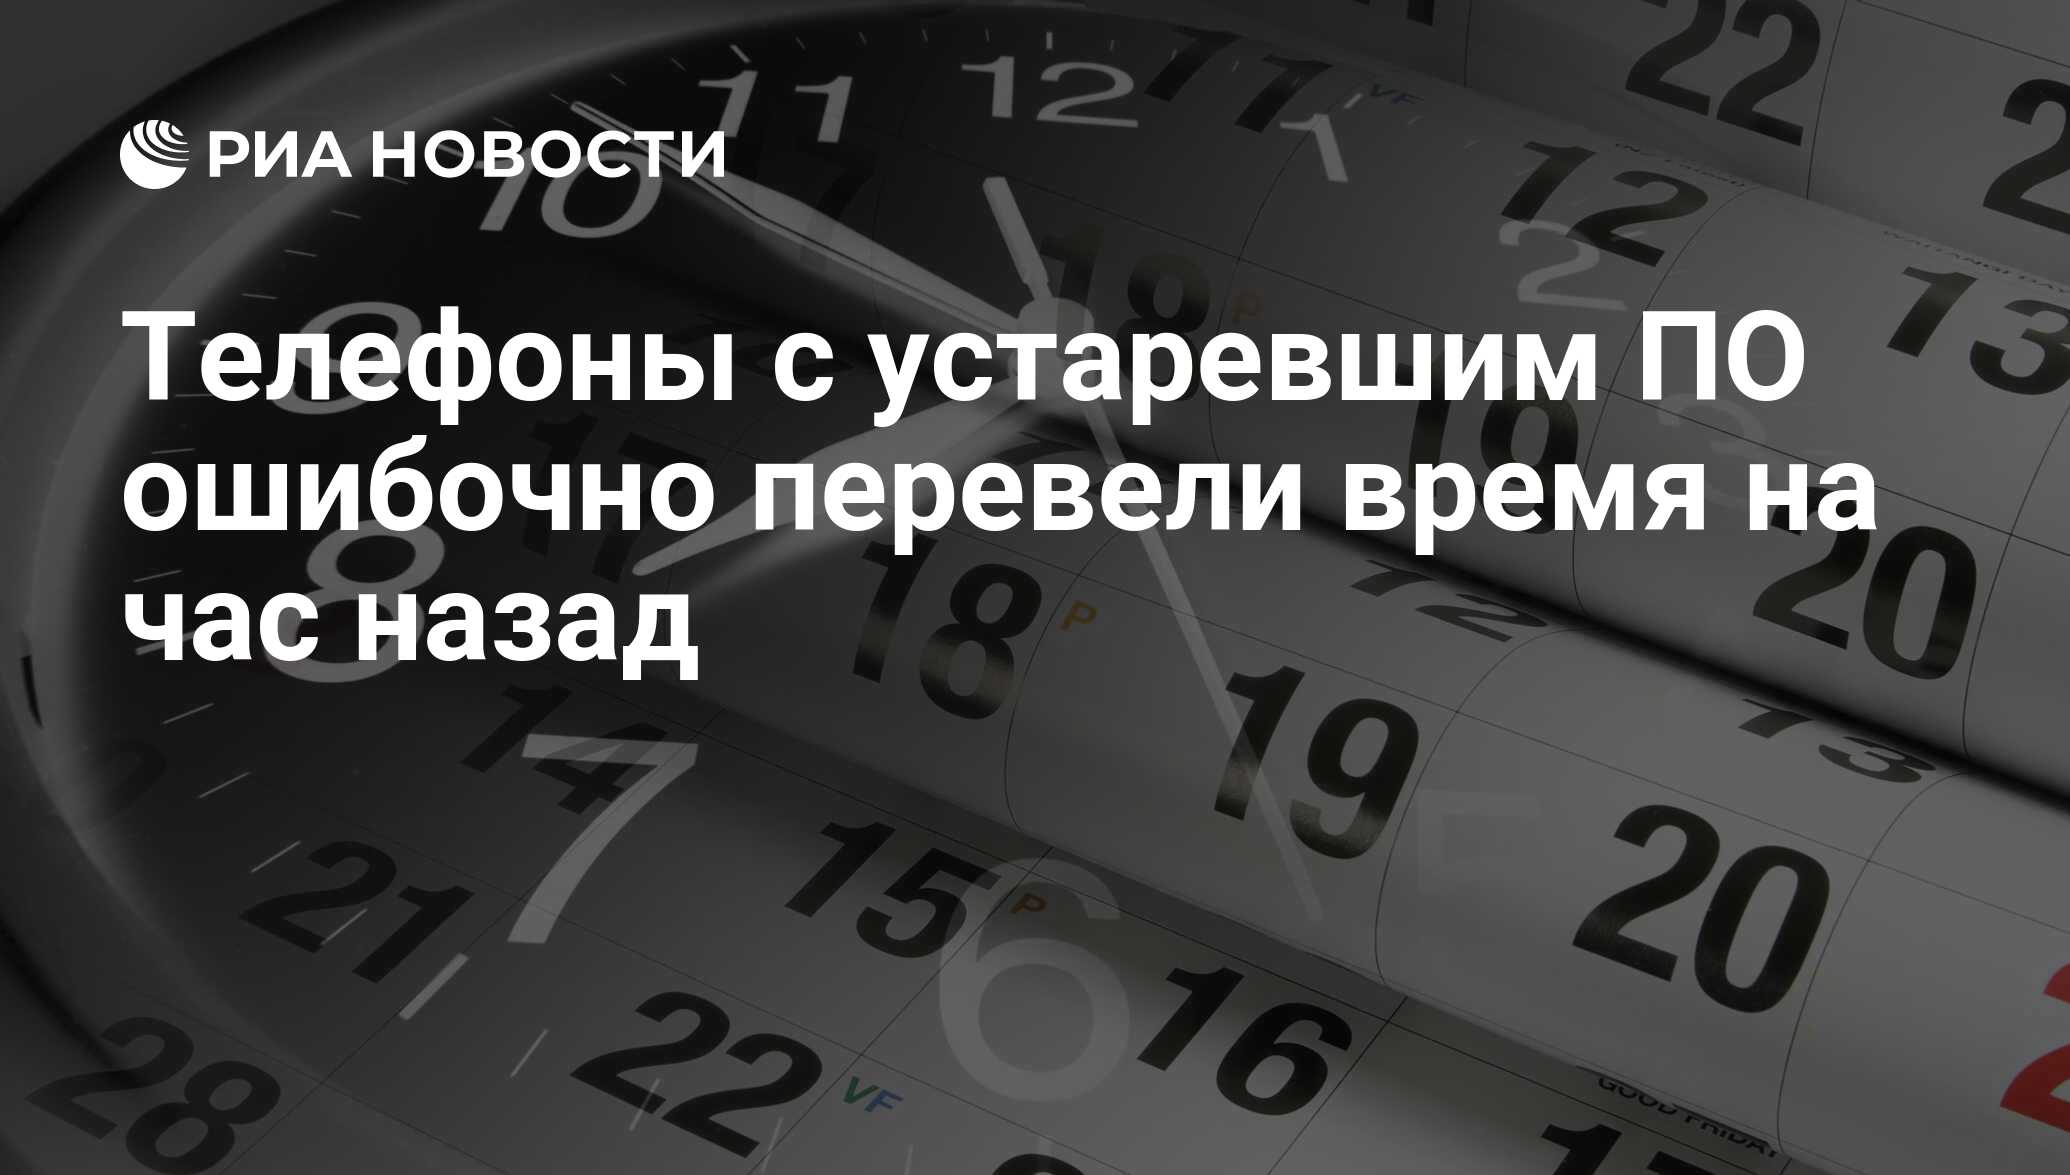 Почему в казахстане переводят время на час